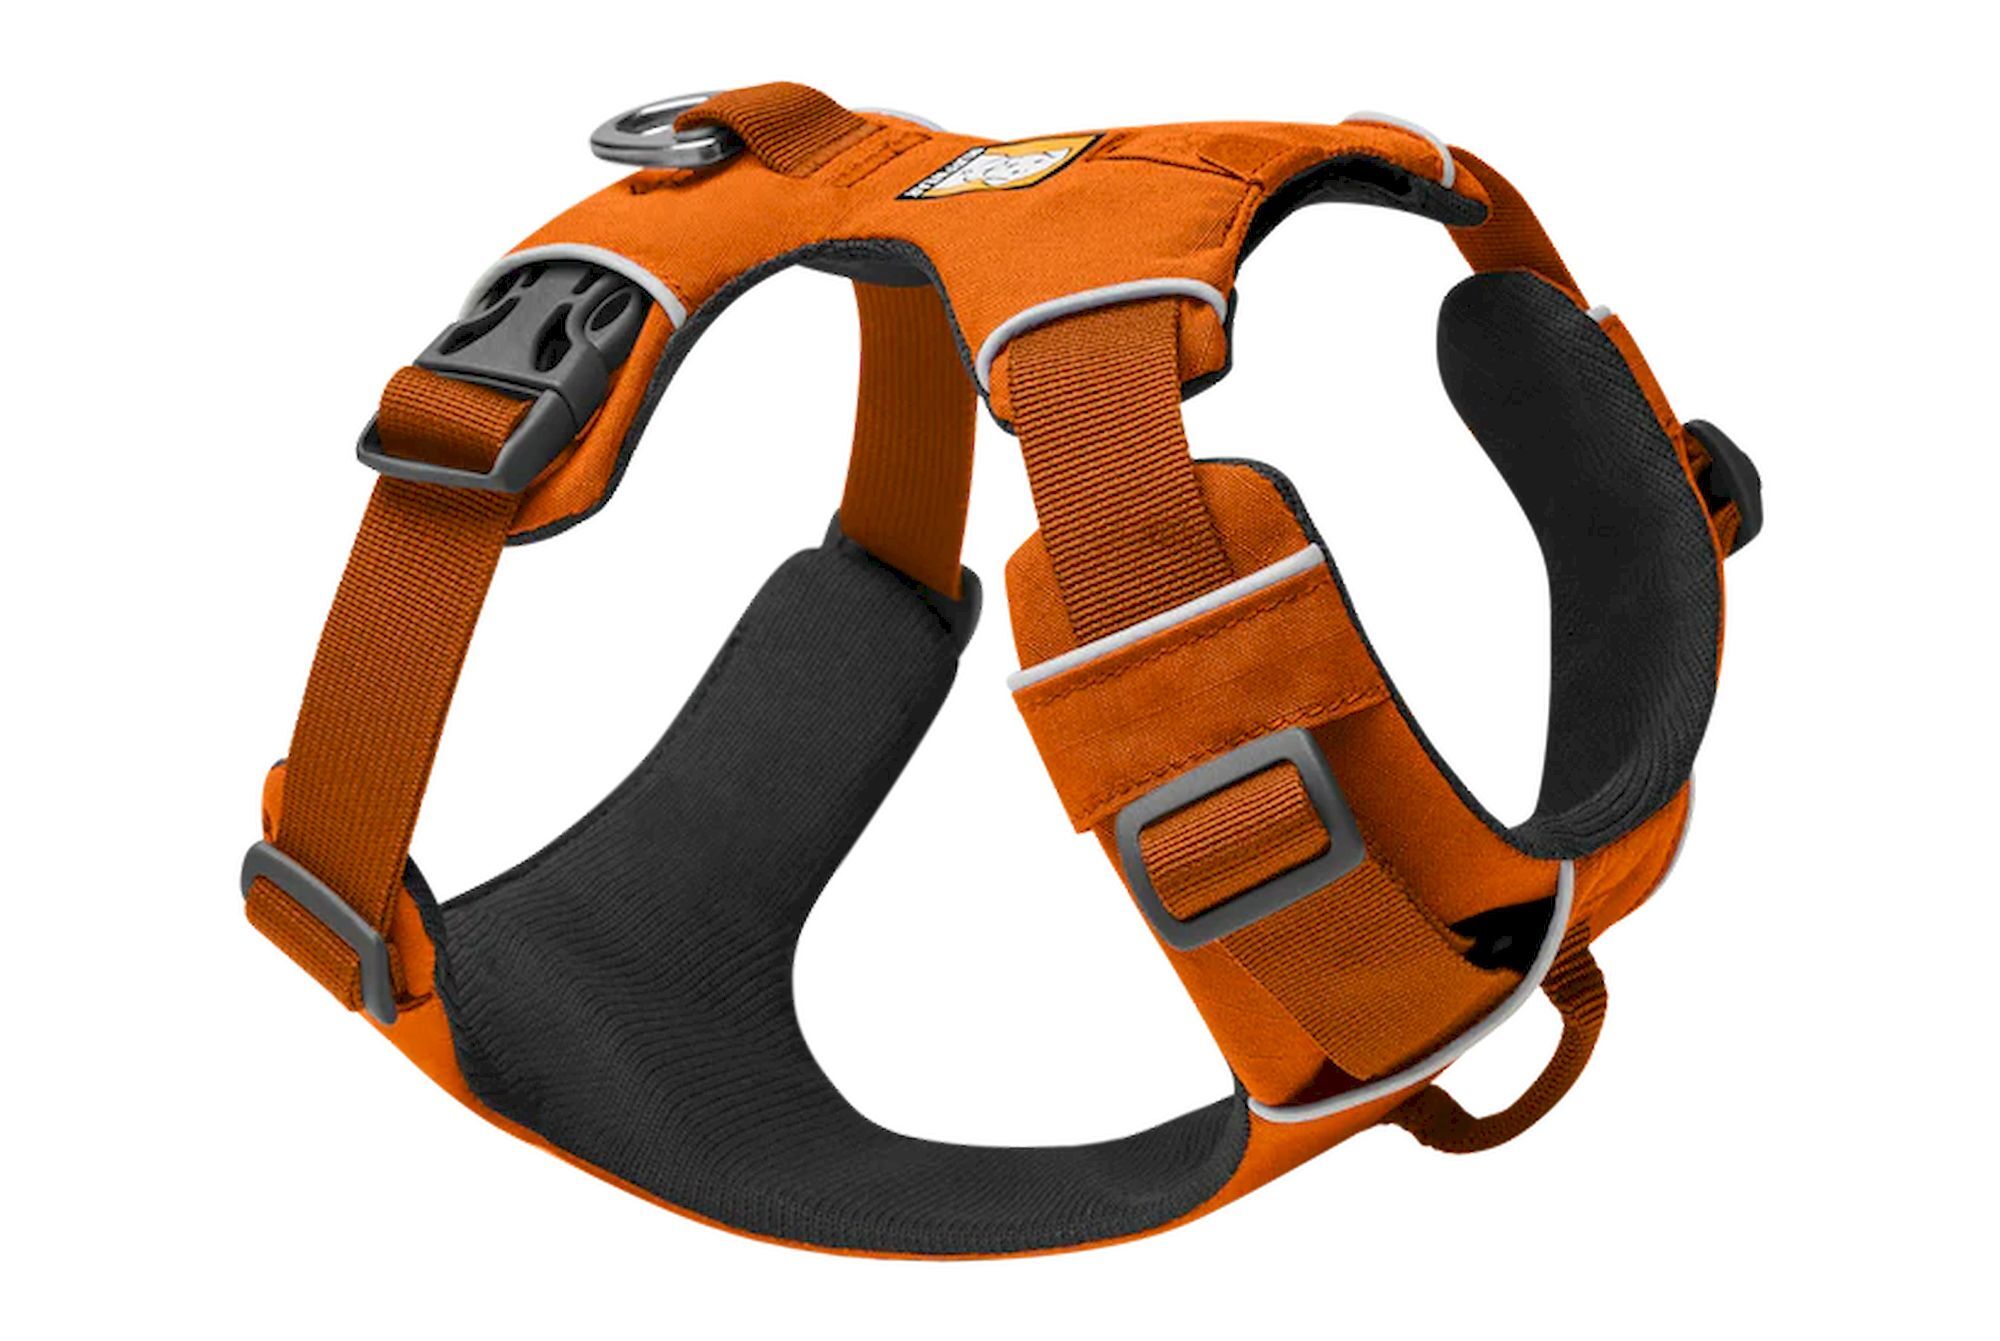 Ruffwear Front Range - Dog harness